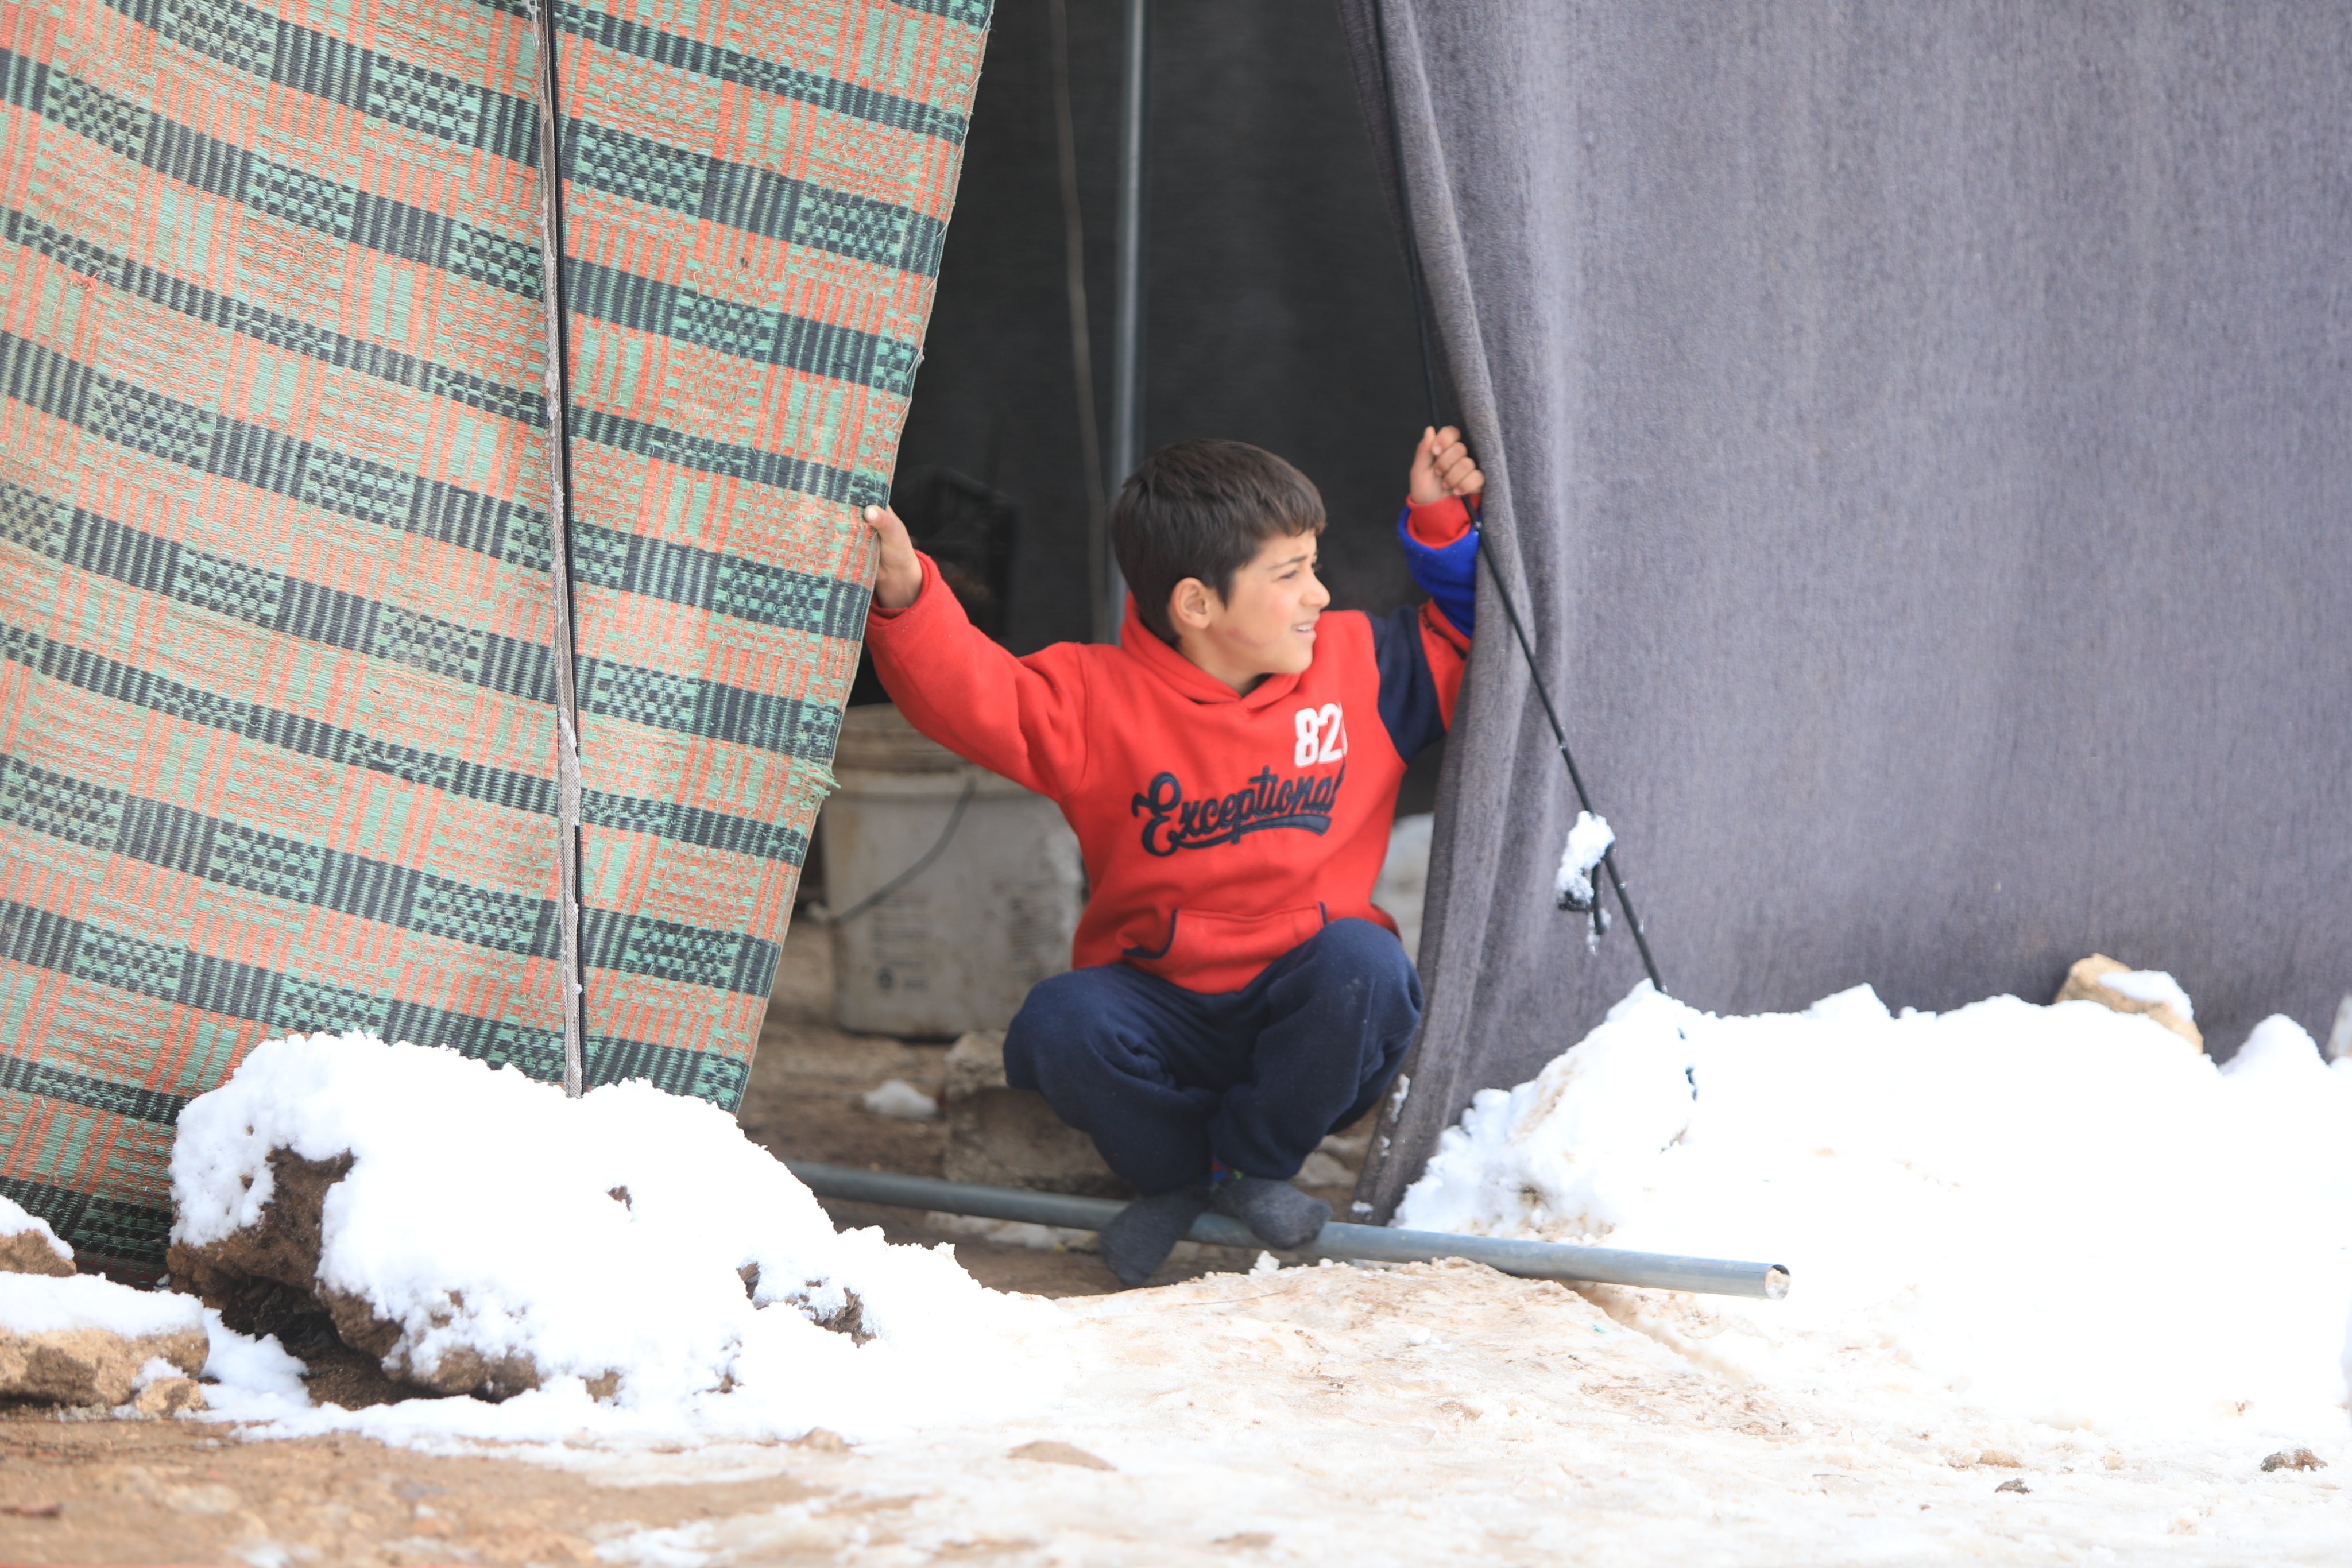 Refugiados sírios tentam manter as suas rotinas após nevão atingir campo de refugiados, no dia 19 de janeiro